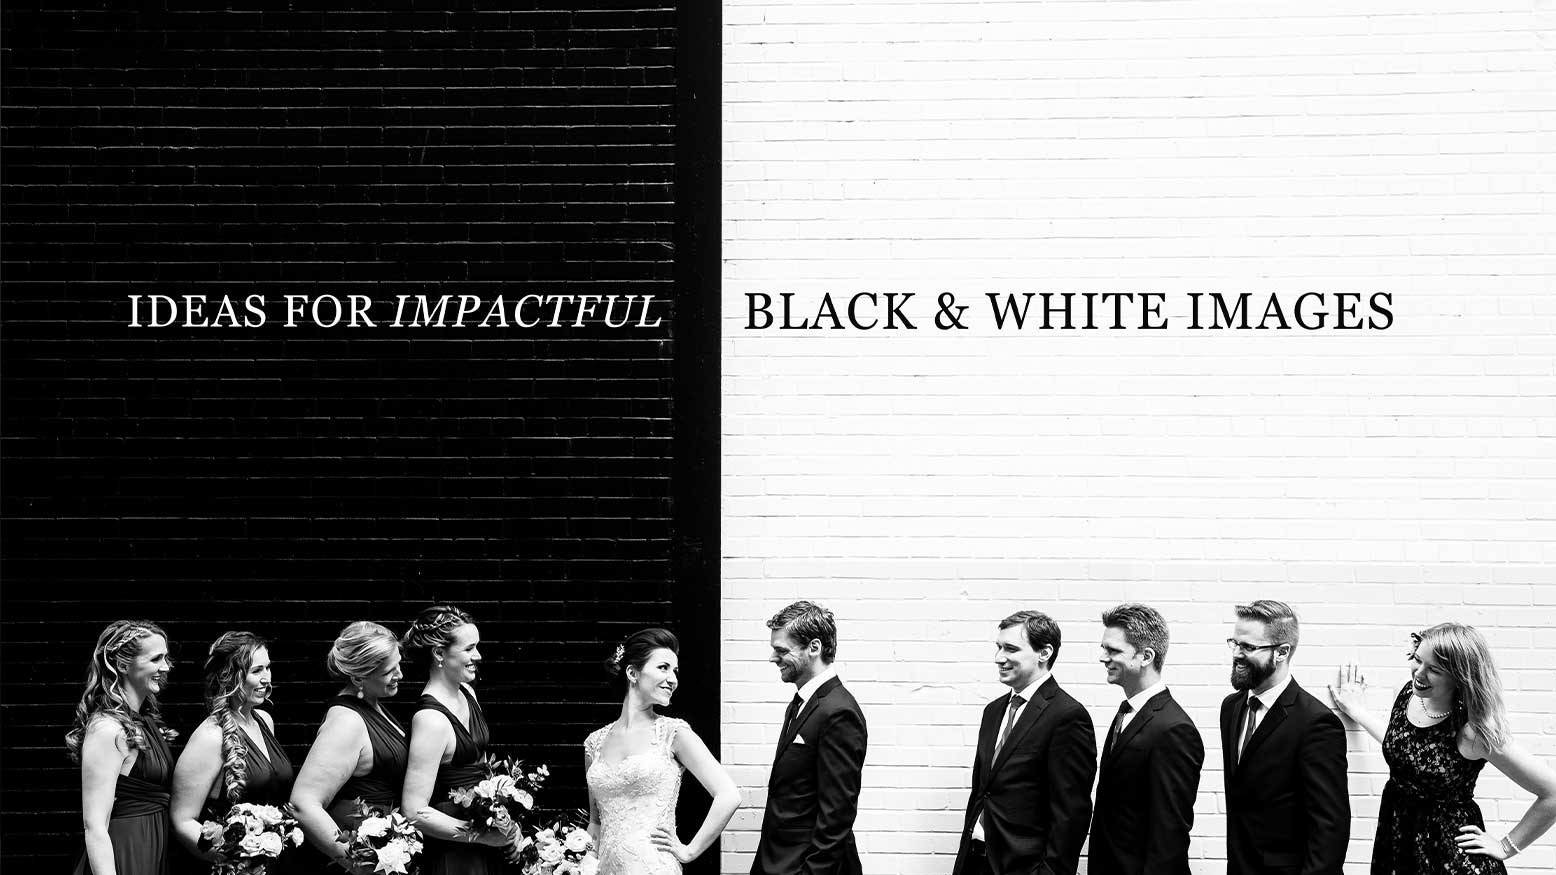 Black & White Images